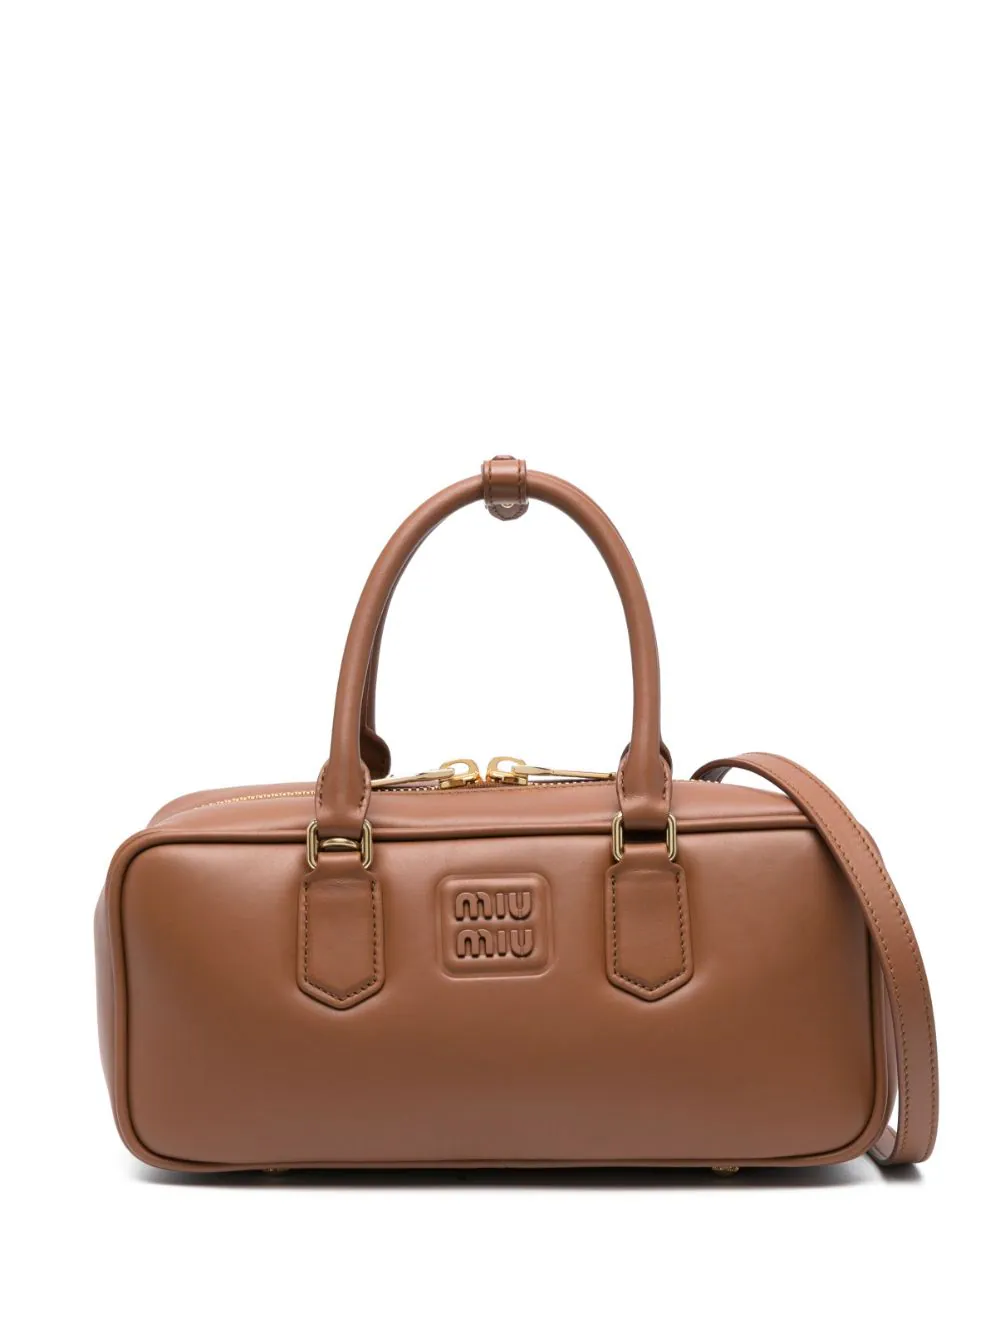 MIU MIU Women Leather Top Handle Bag